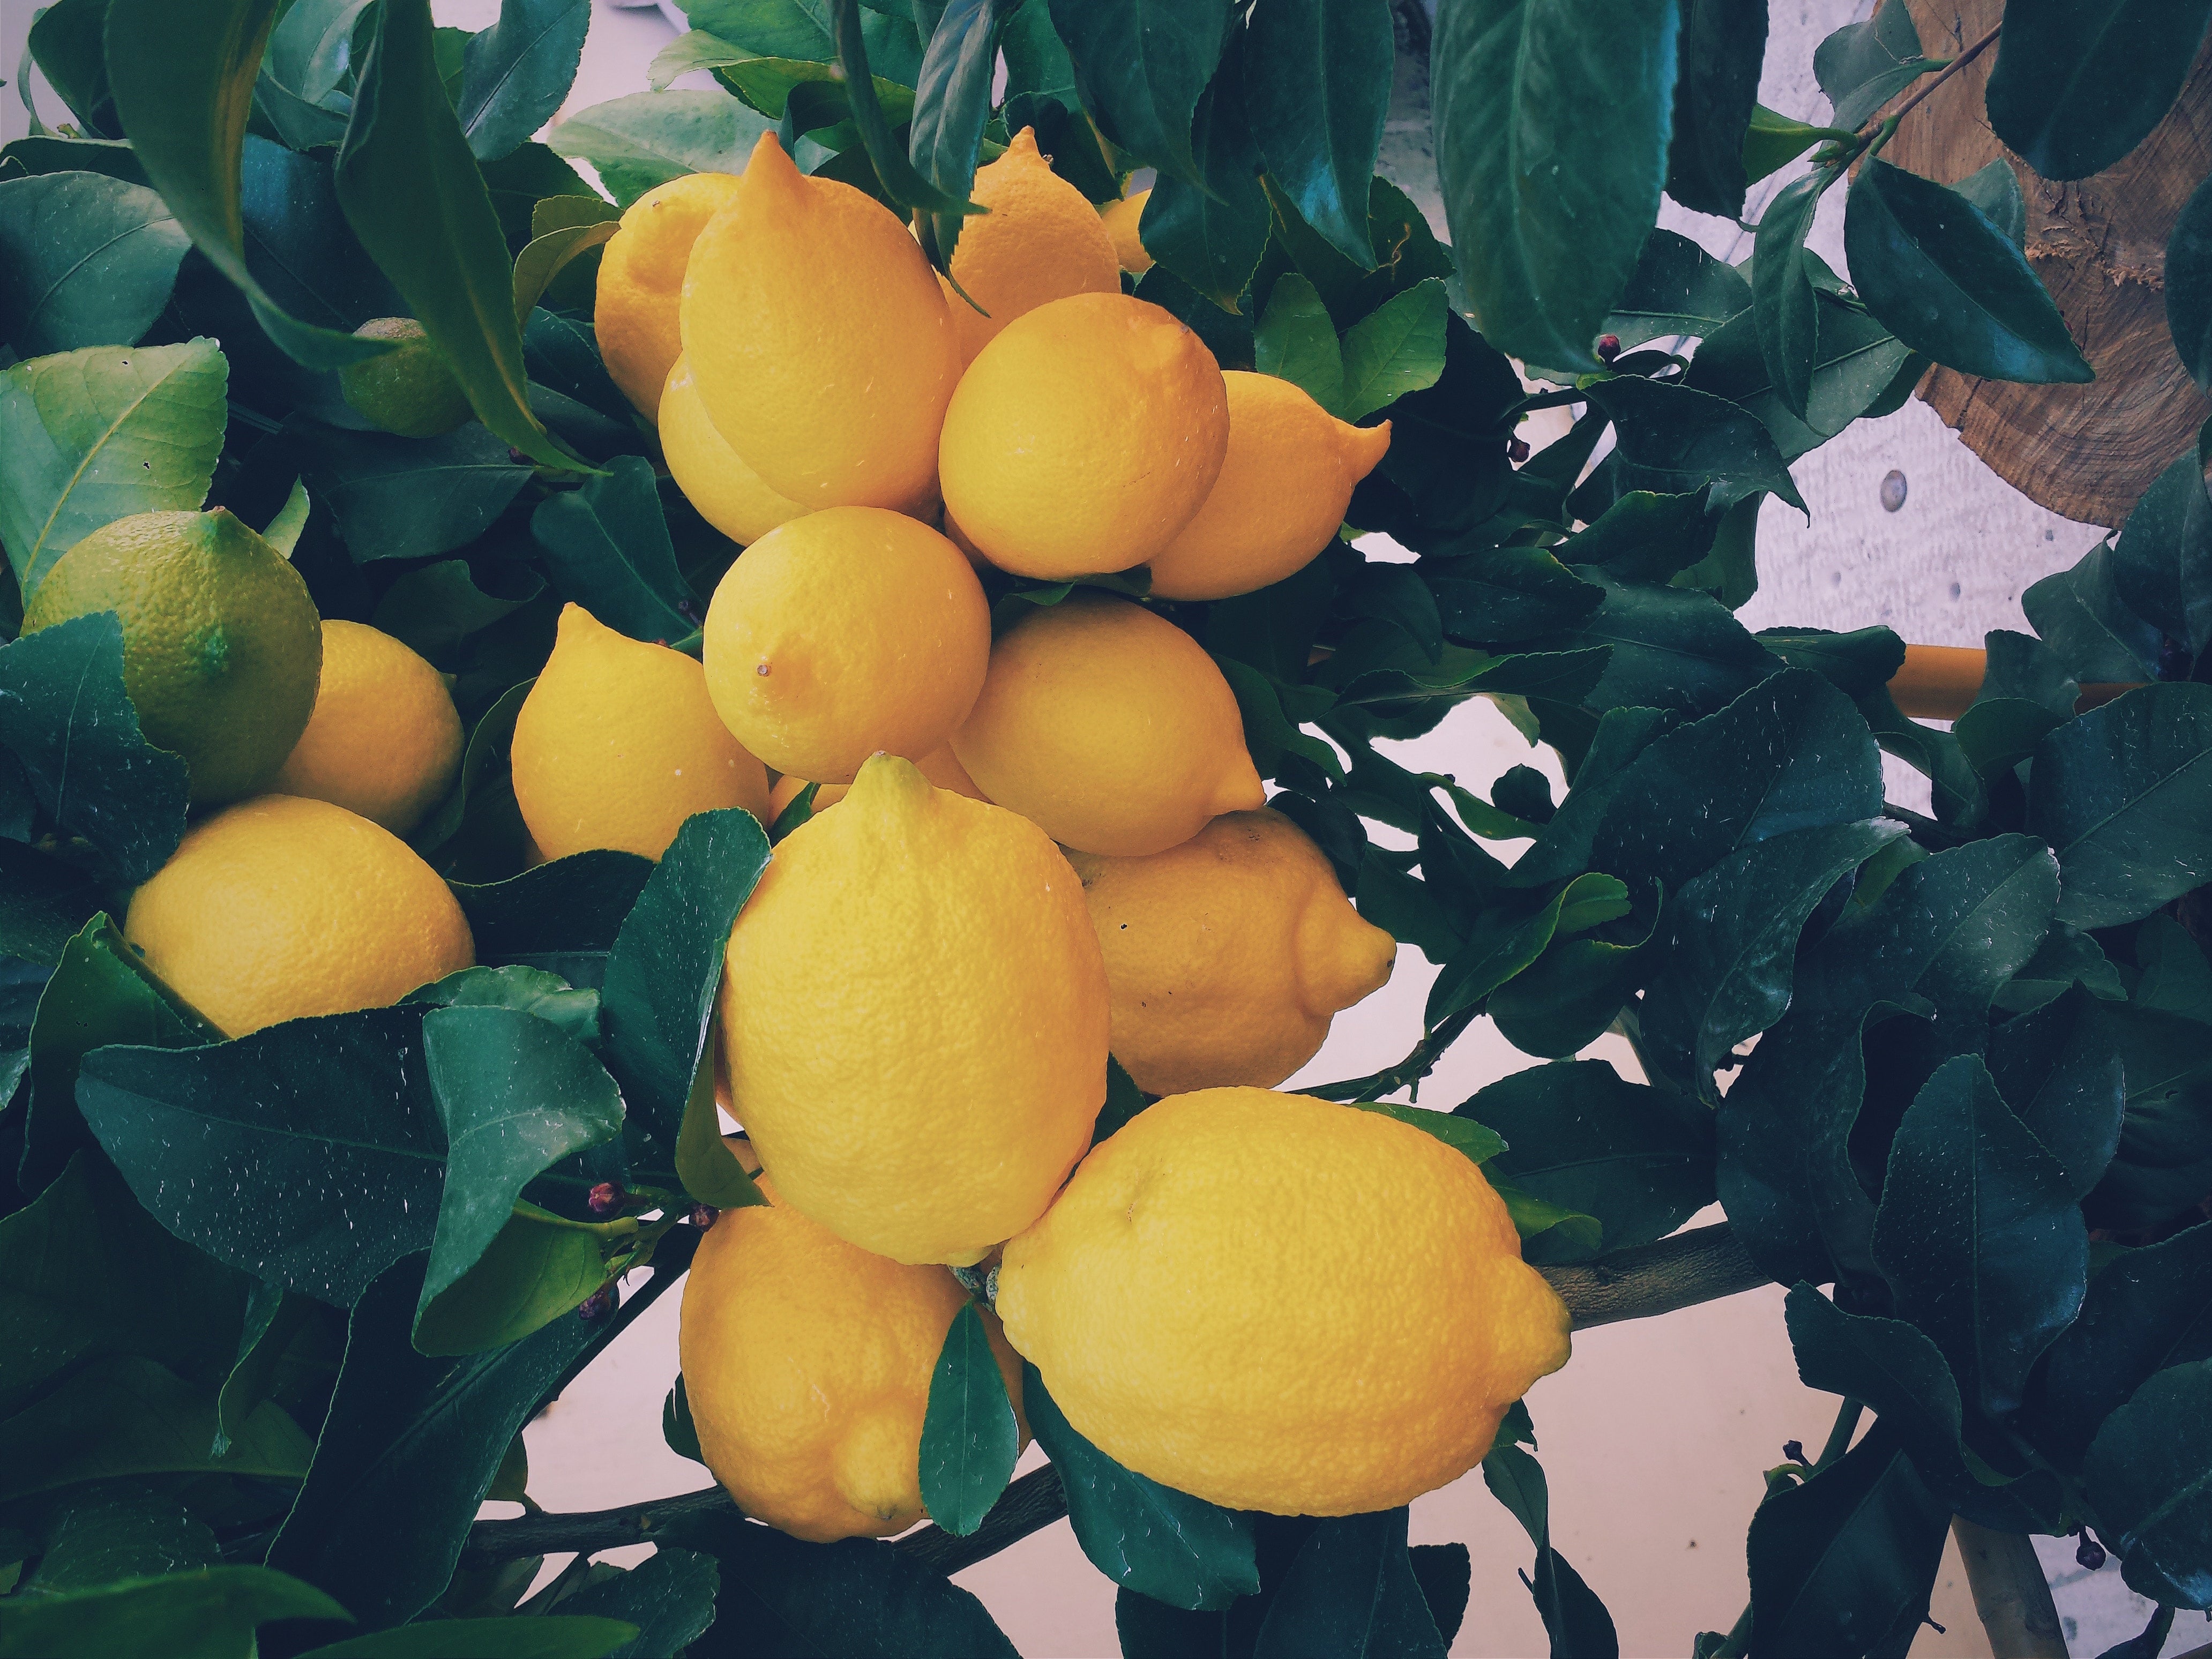 Lemon Peels Are Used to Produce Lemon Essential Oil